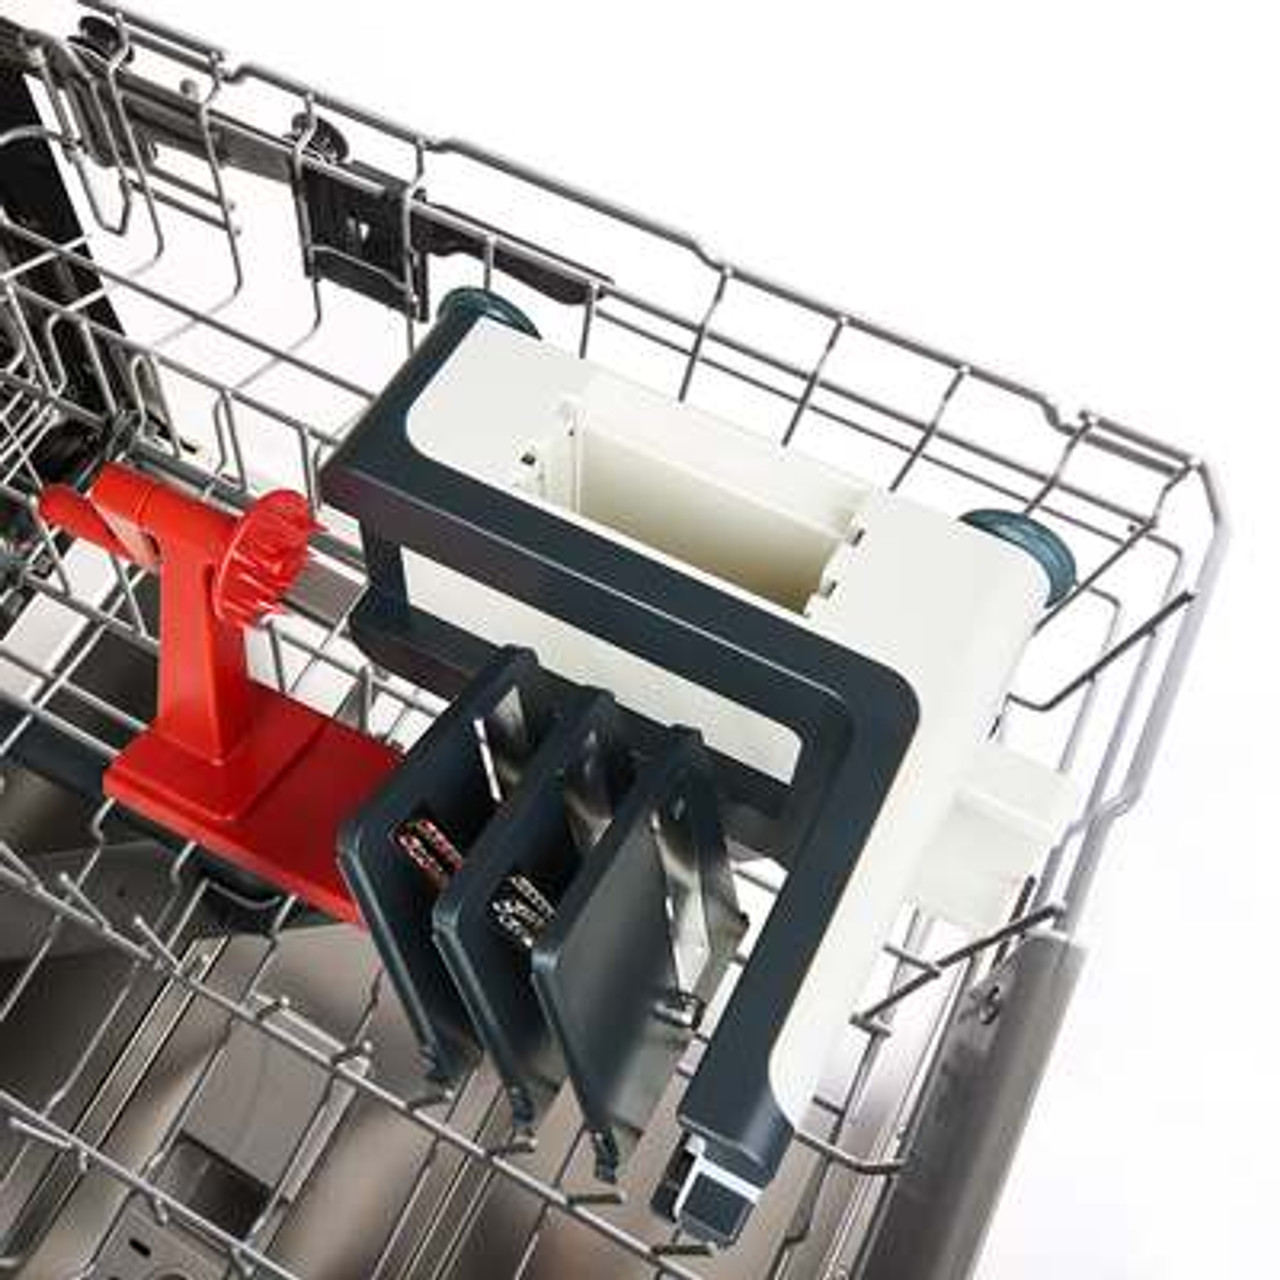 Trudeau Spiral Slicer is dishwasher safe